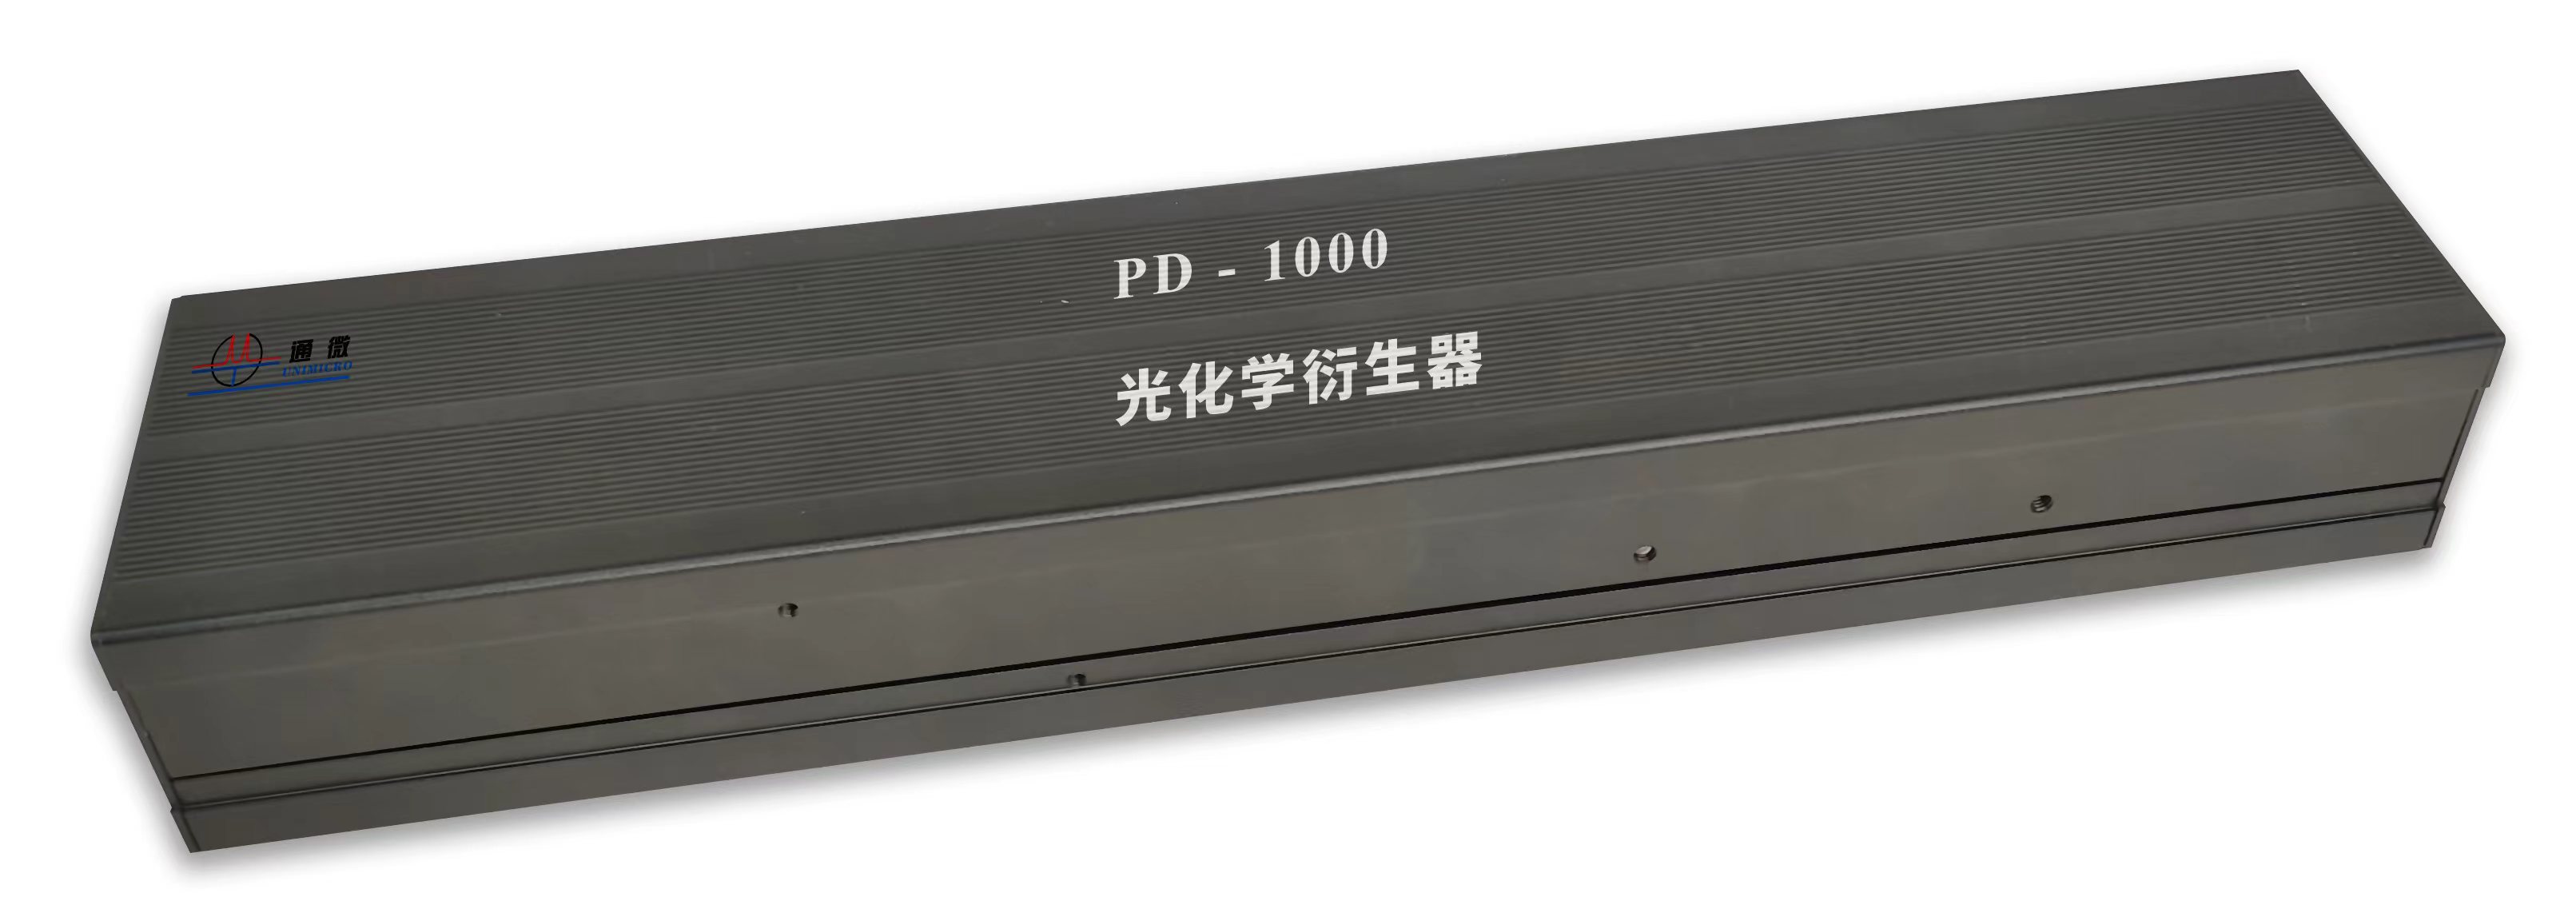 PD-1000光化学衍生器